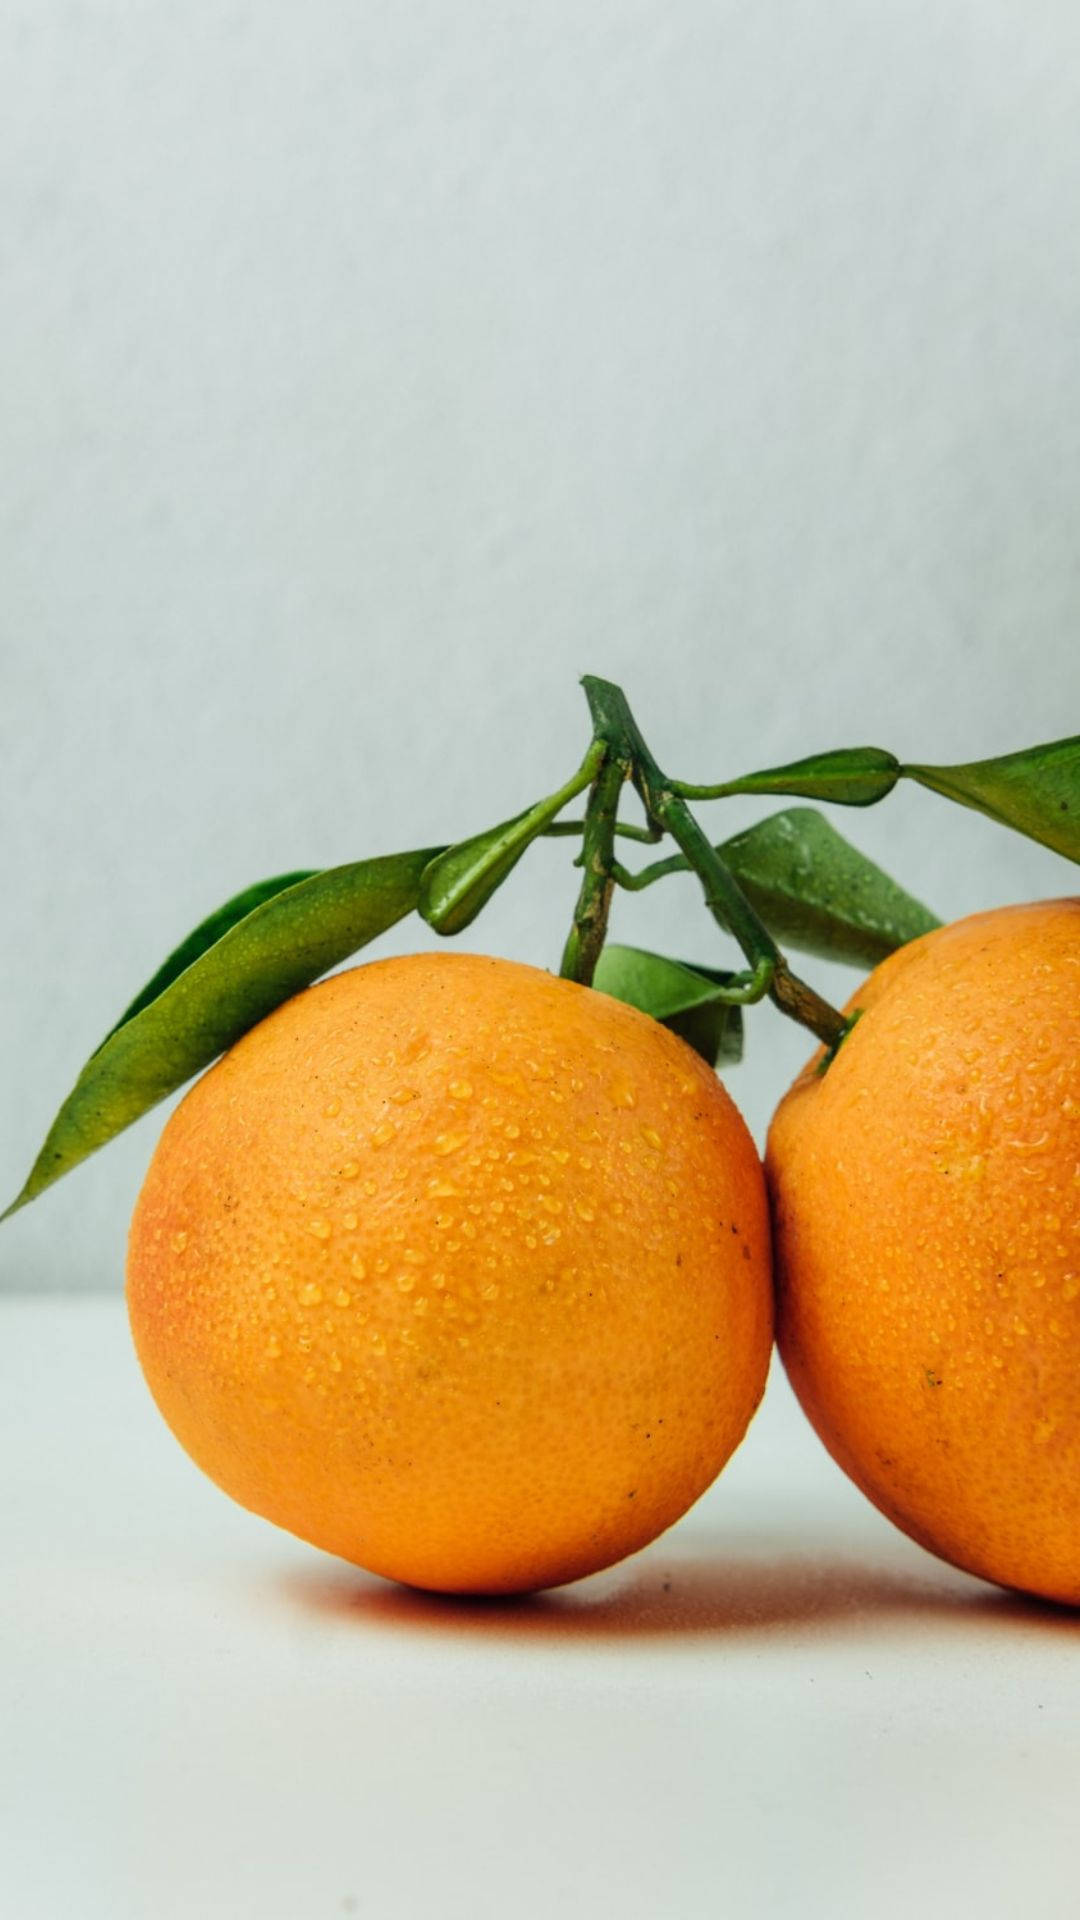 Leaning Orange Fruits Background